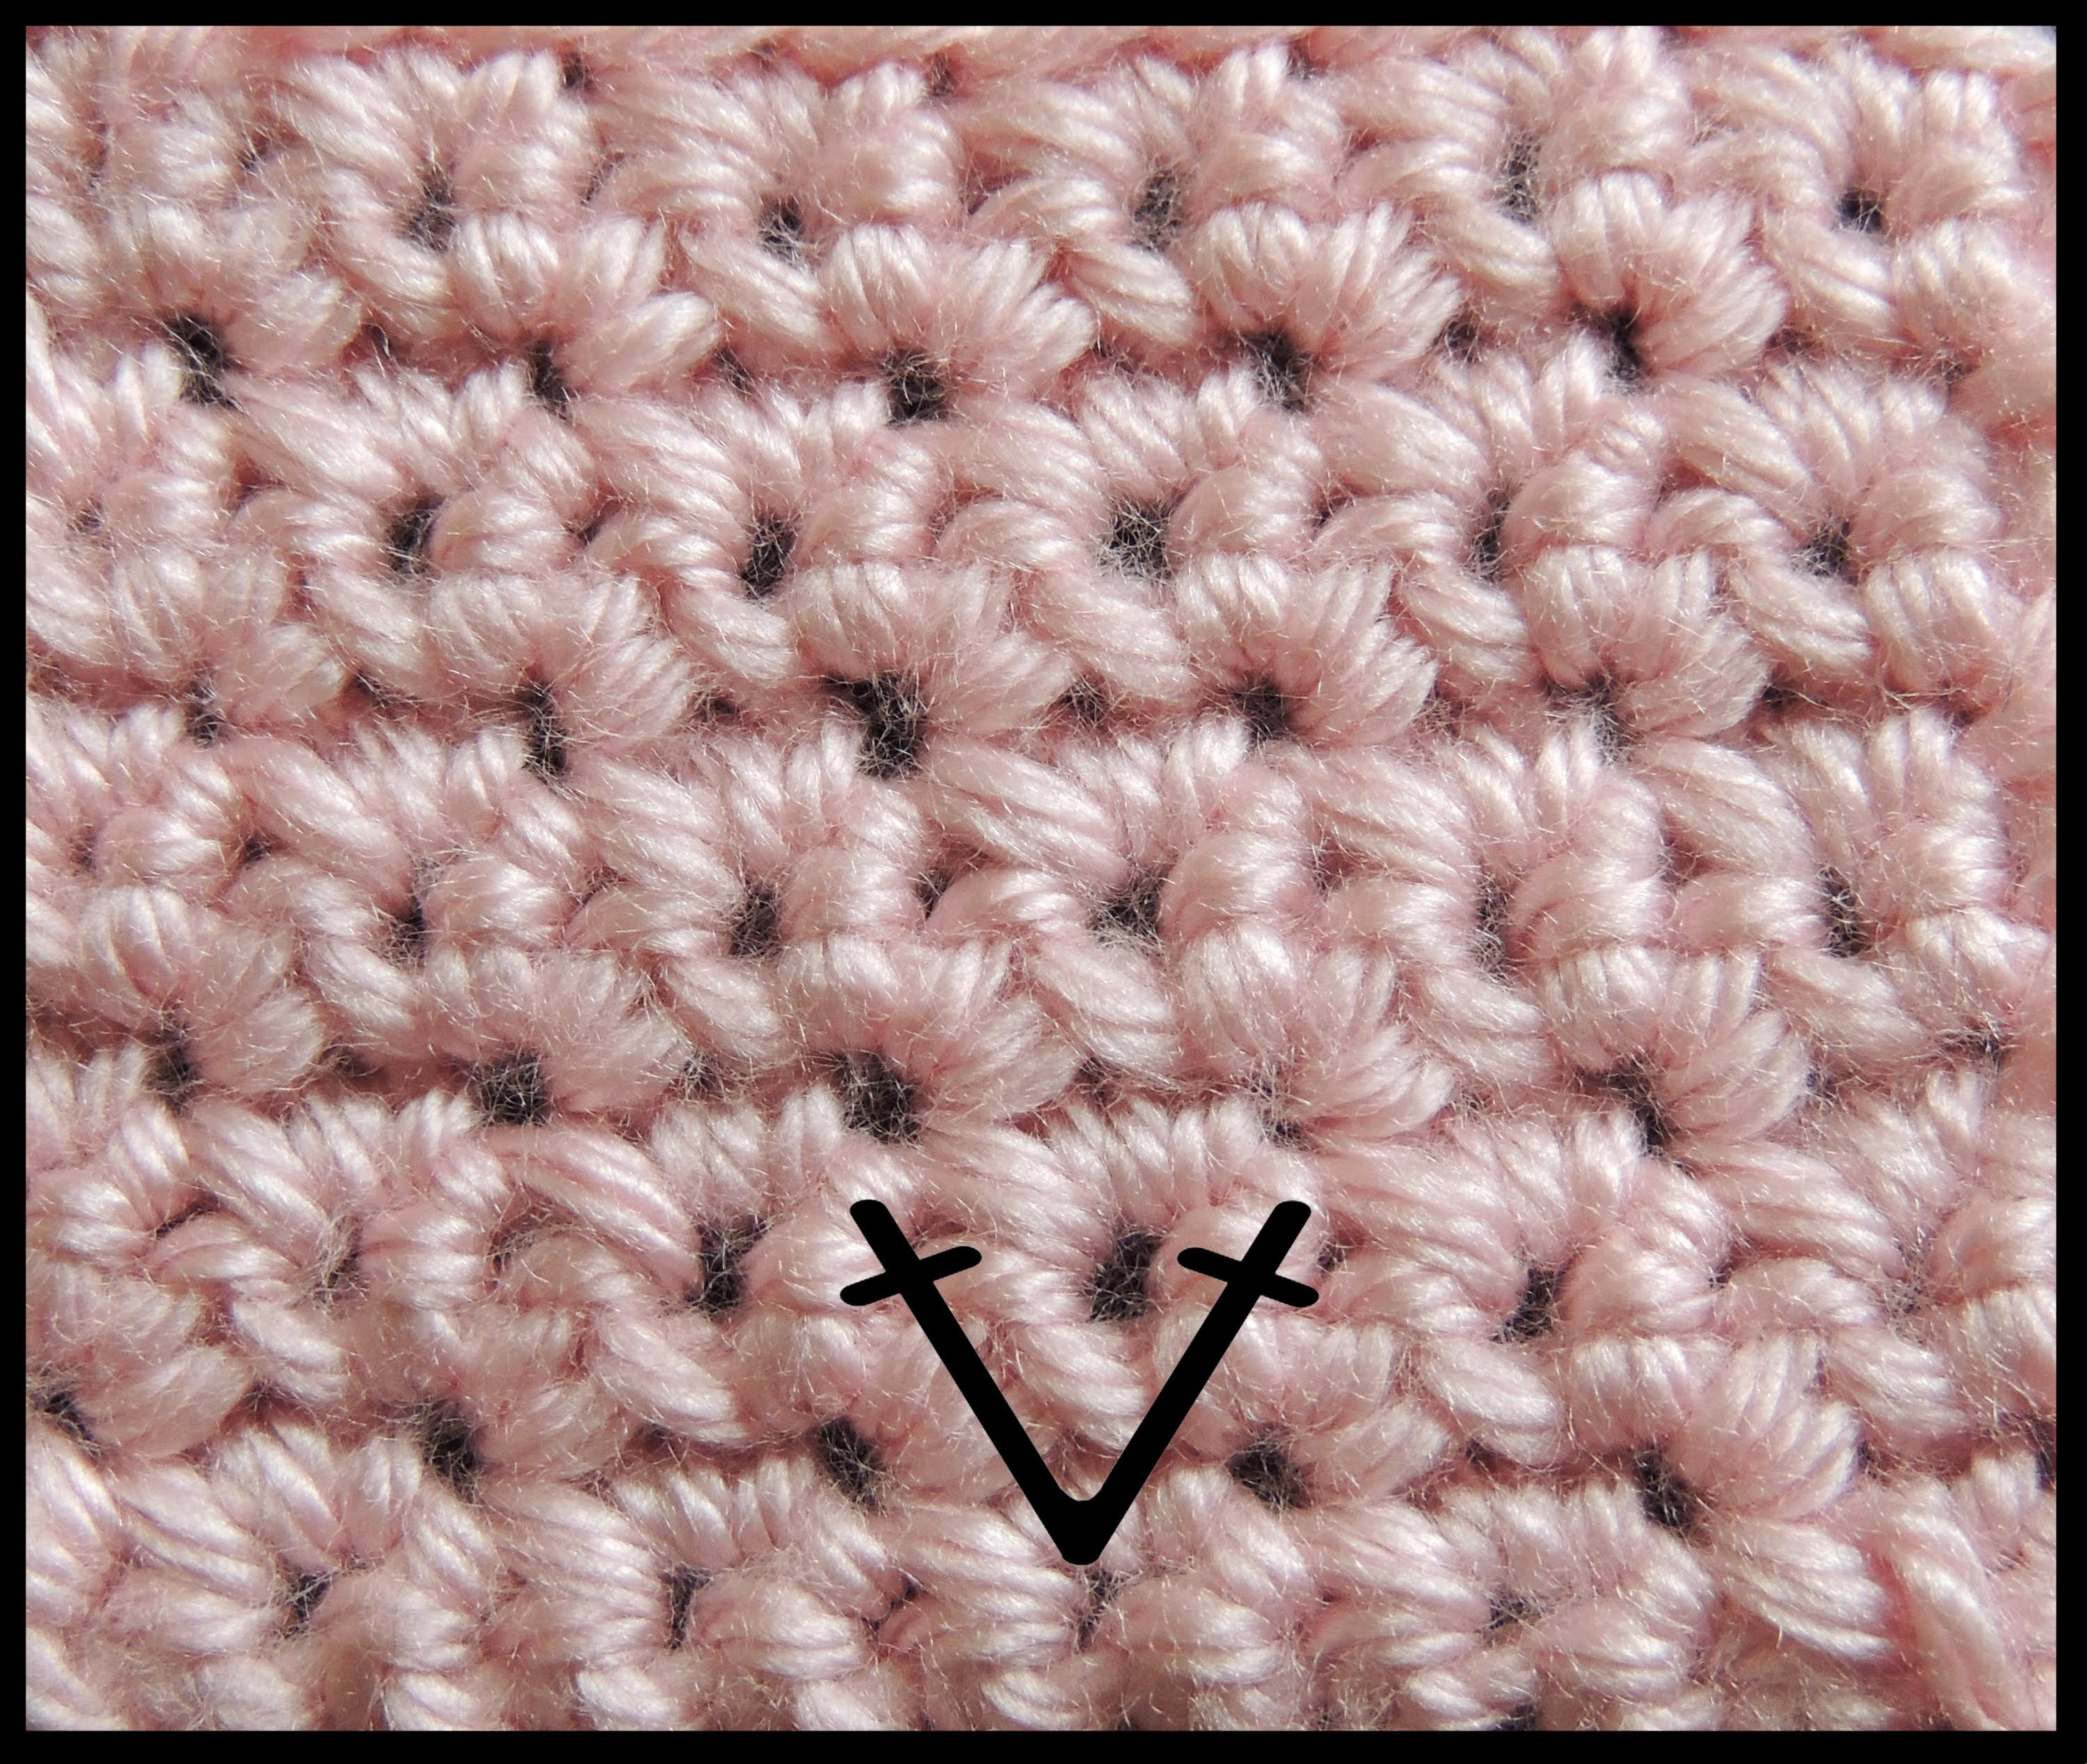 Curso Basico de Crochet : Punto Bajo en Aumento